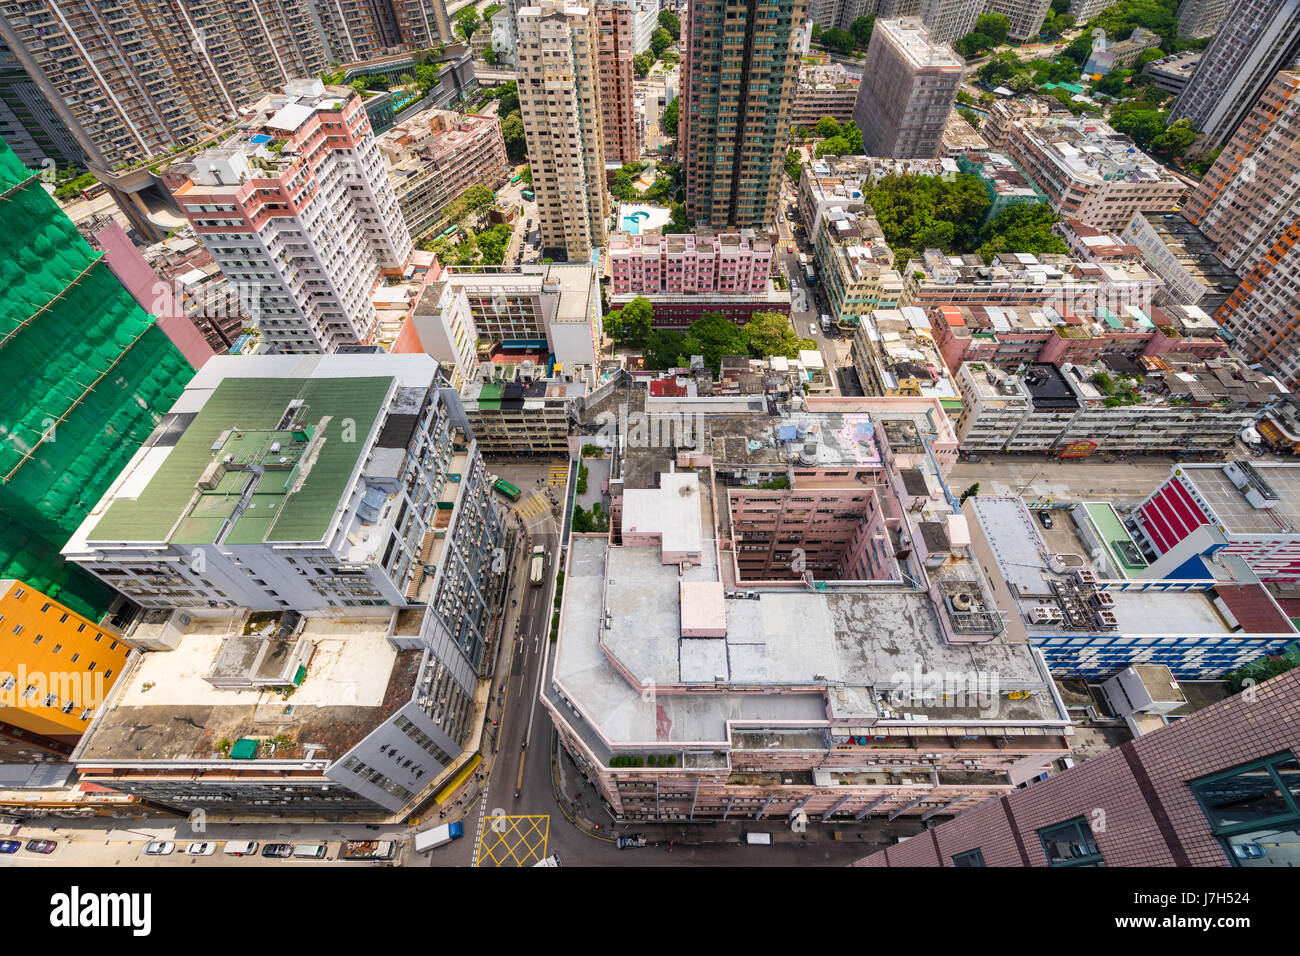 Blick auf Gebäude in Hong Kong von einem Hochhaus. Hongkong ist eine Stadt mit einem hohen Anteil von Wolkenkratzern dicht bevölkern. Stockfoto